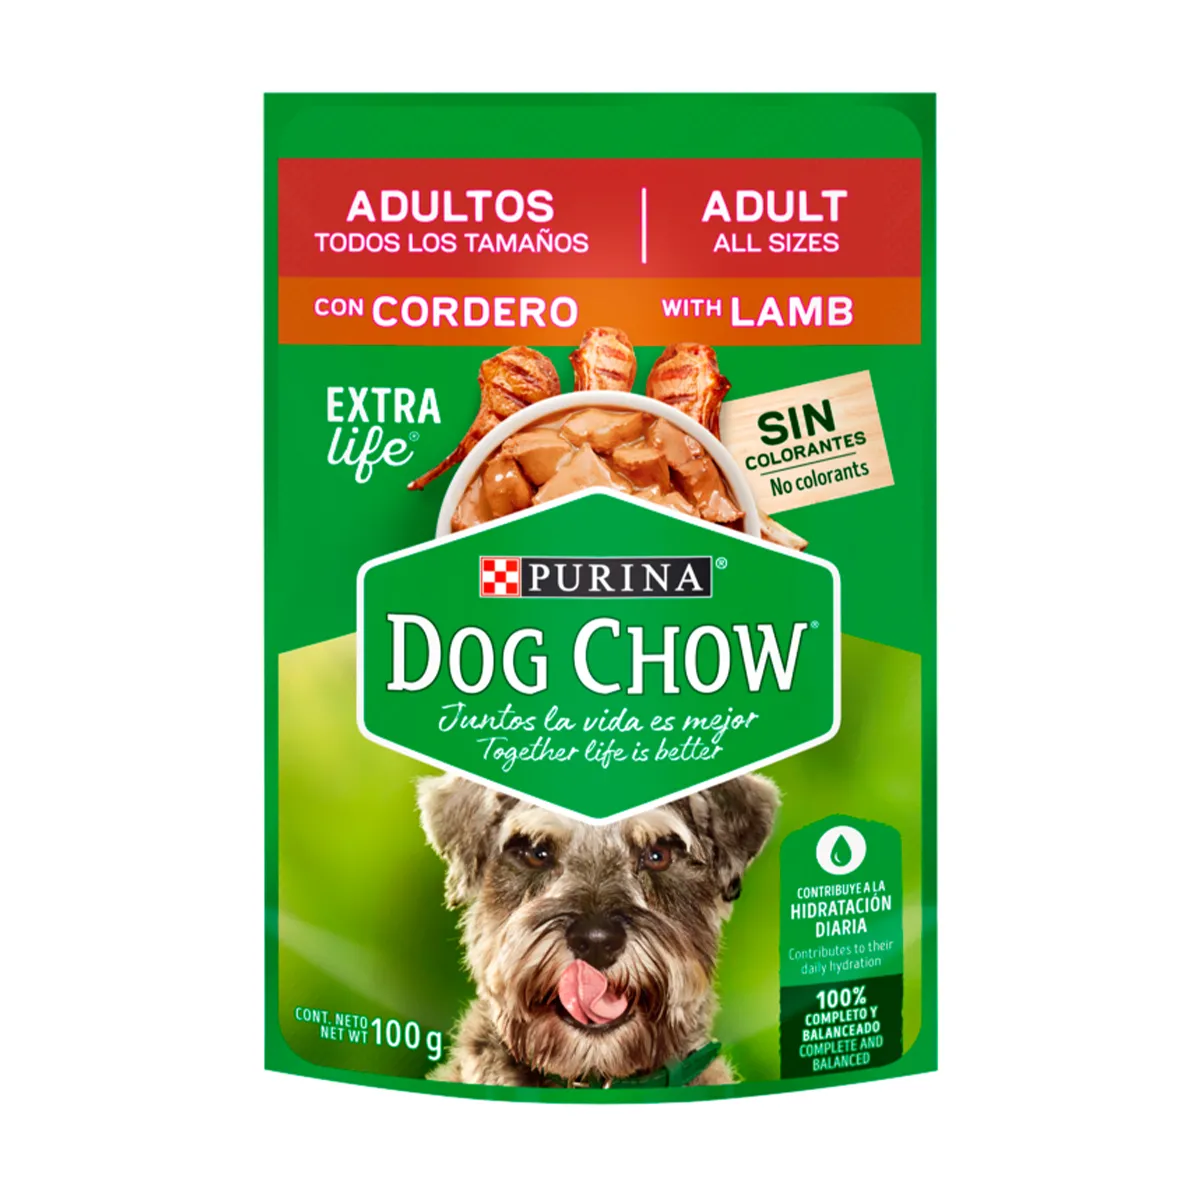 purina-dog-chow-adultos-todos-los-tamanos-con-cordero-nutrion-animal-tienda-online-nutricion-animal-tienda.